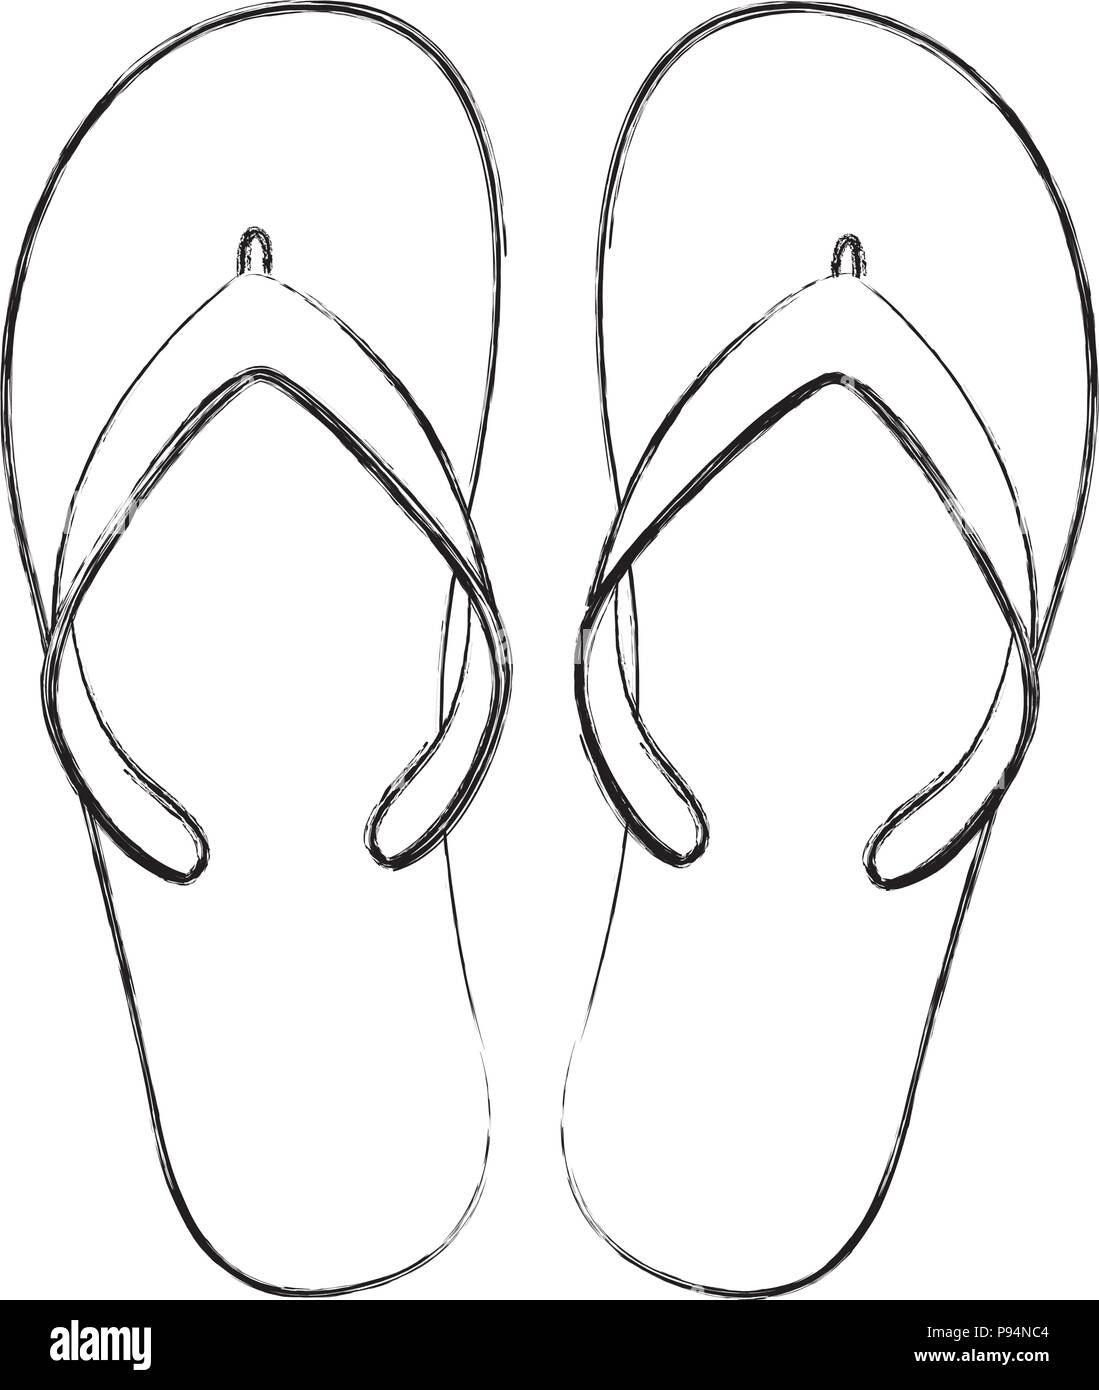 Chaussures de plage tongs en caoutchouc accessoires Image Vectorielle Stock  - Alamy